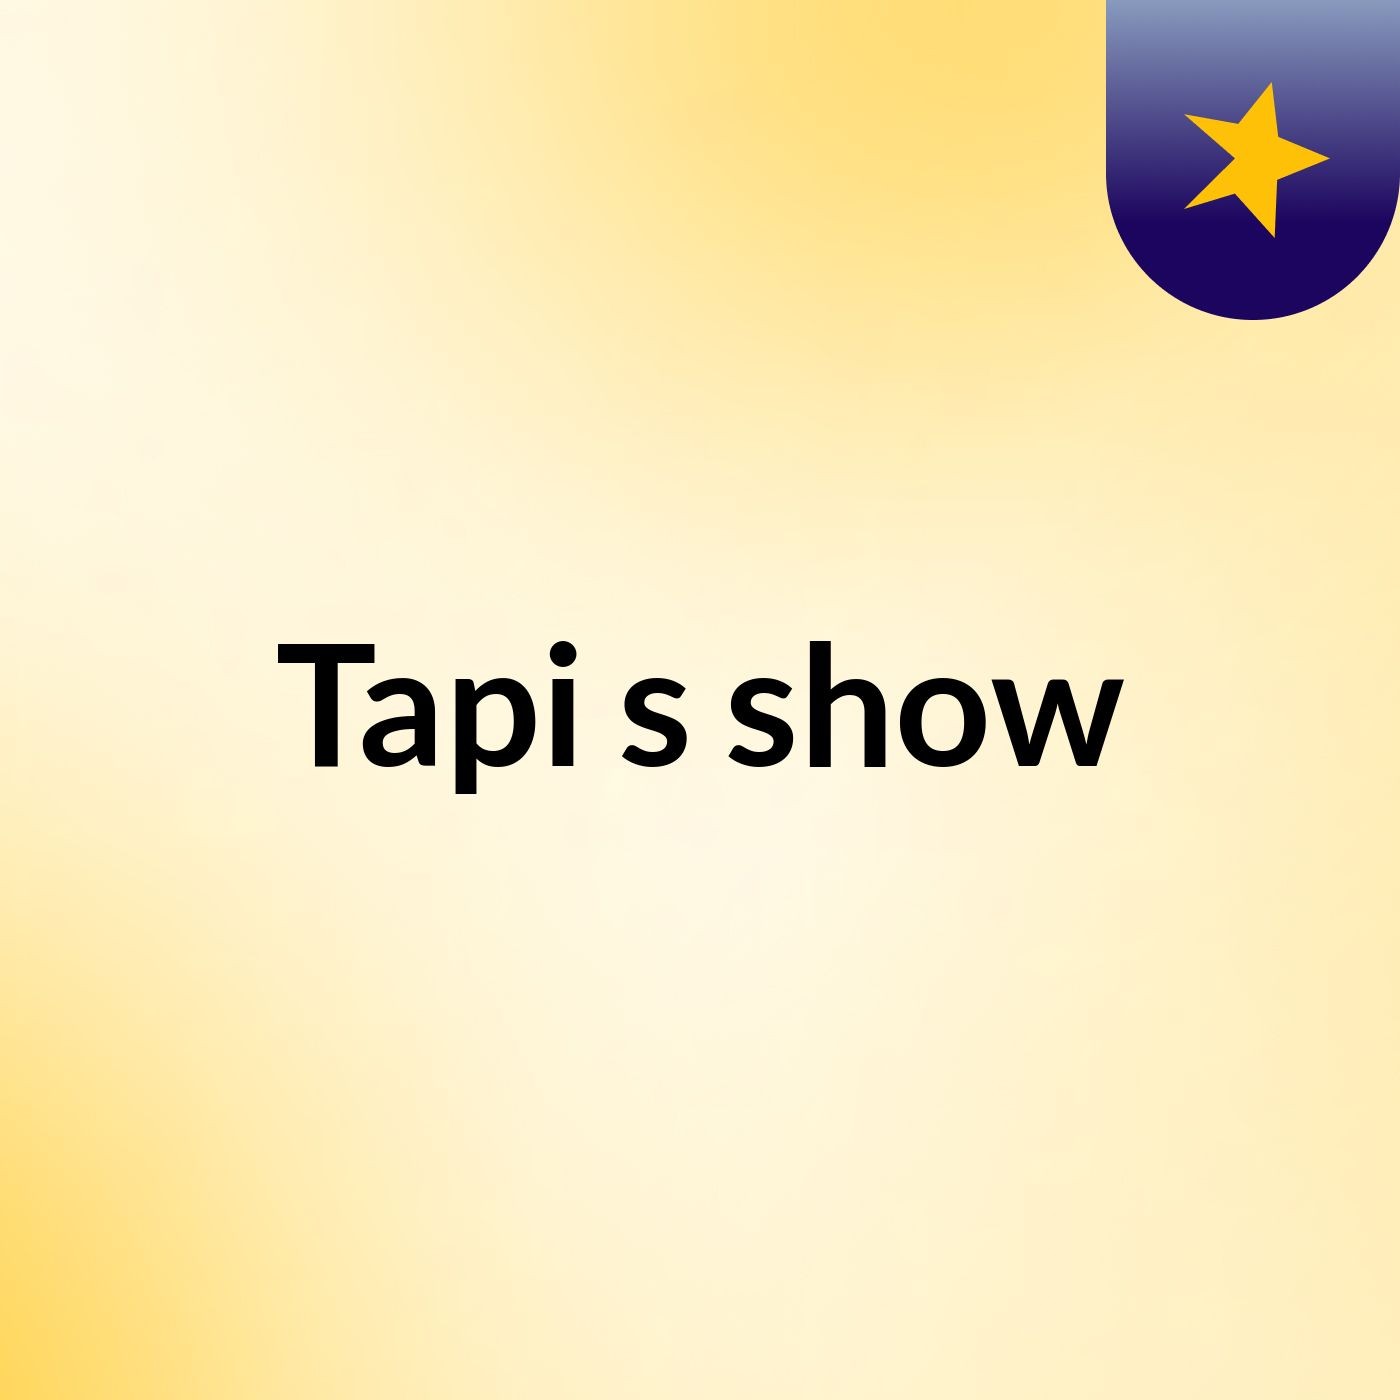 Tapi's show